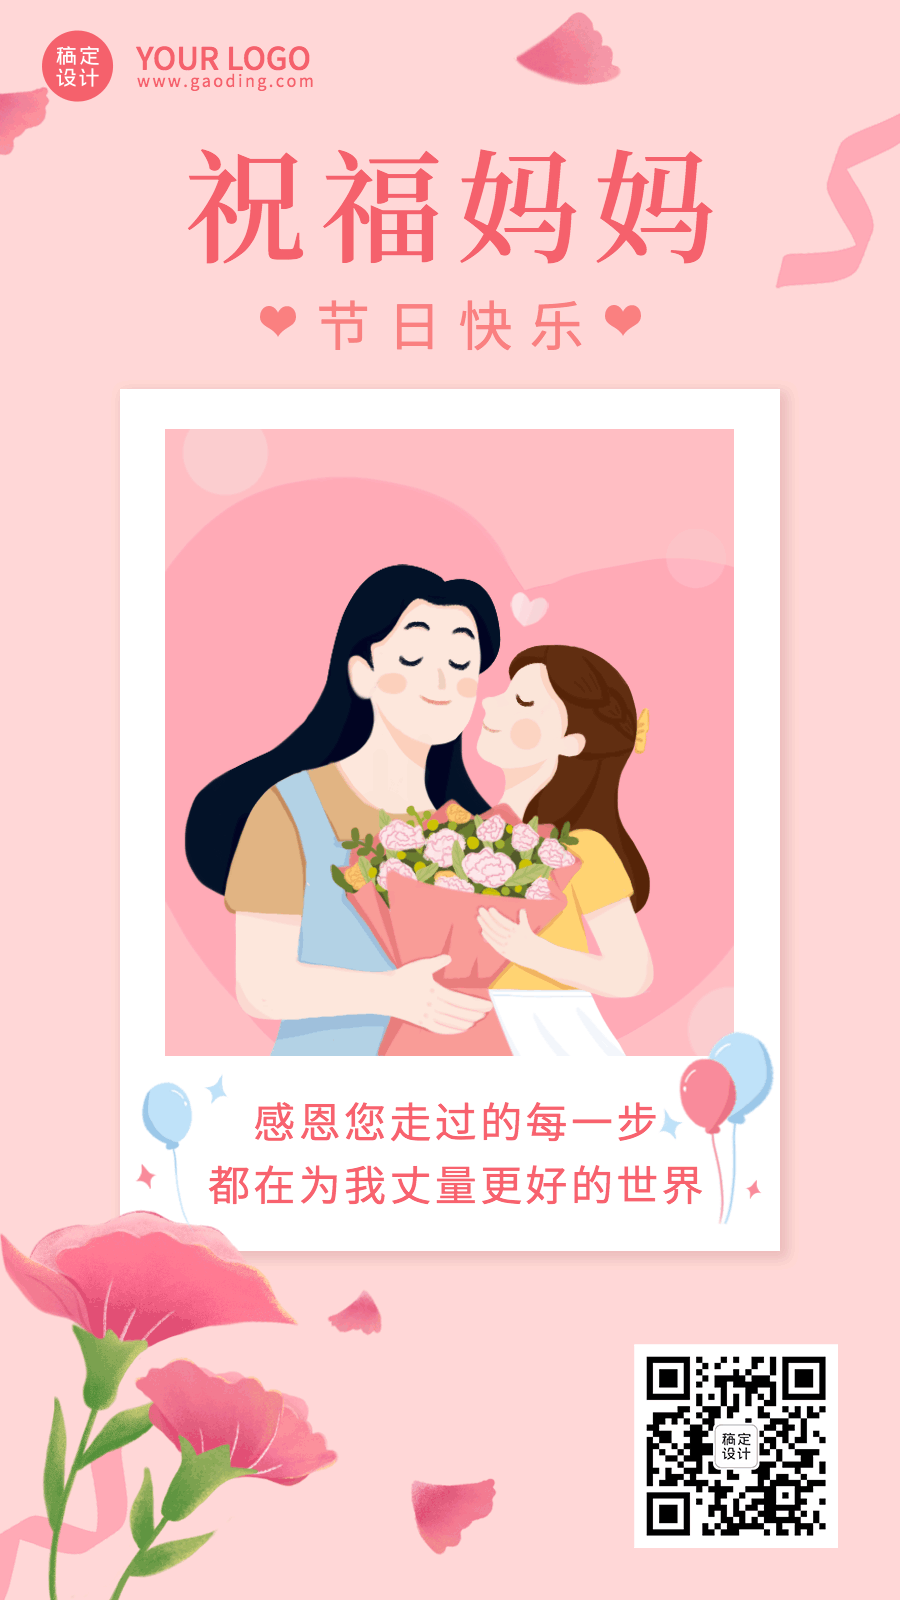 母亲节节日祝福插画动态海报预览效果